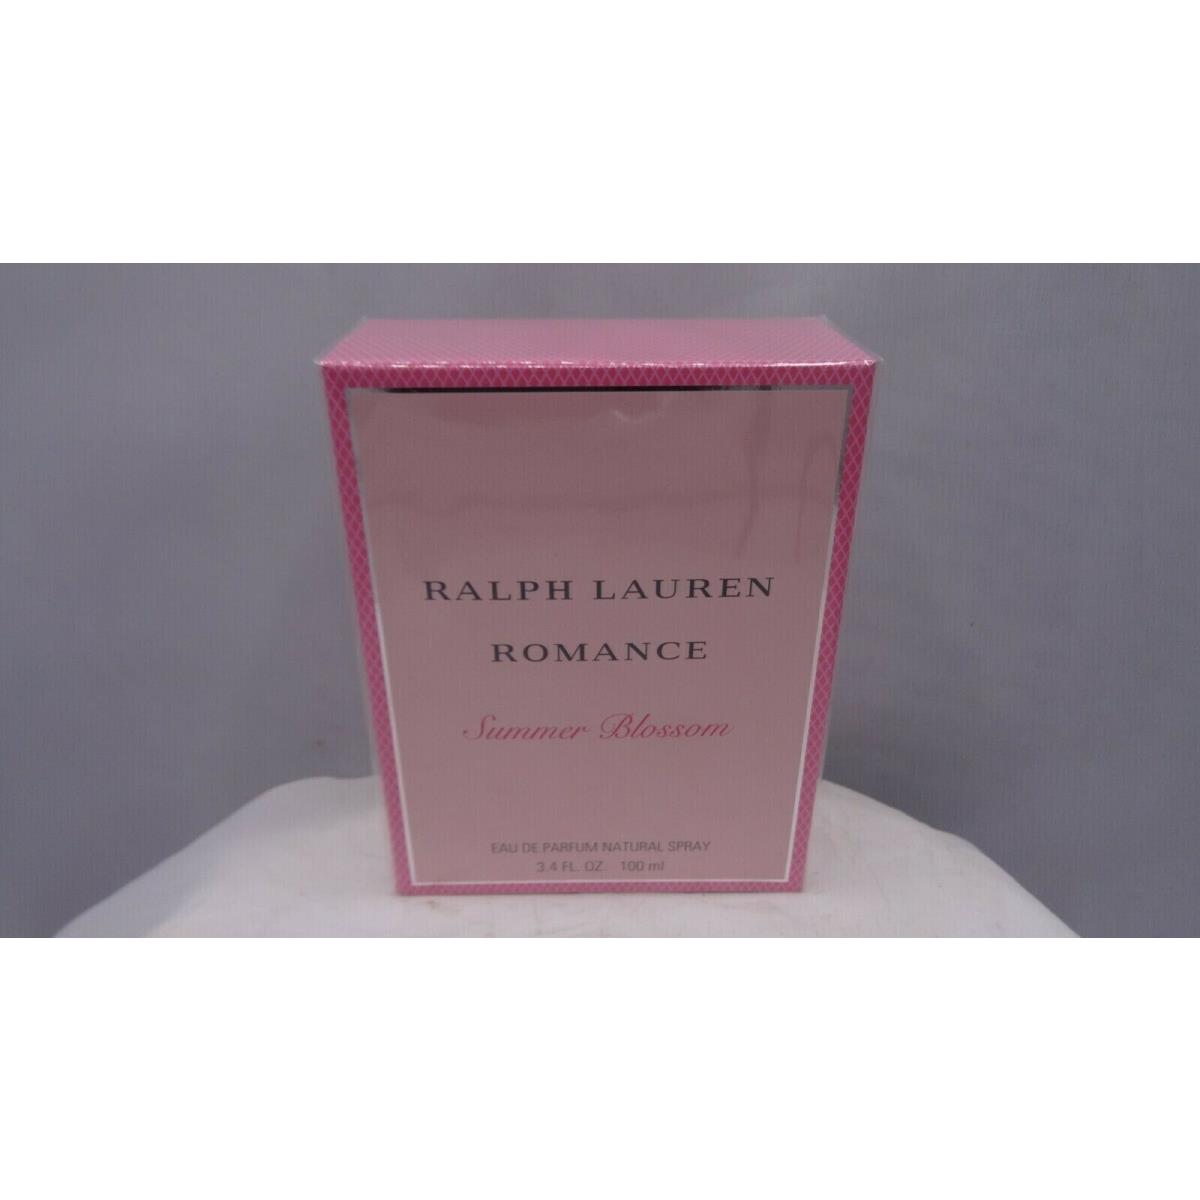 Ralph Lauren Romance Summer Blossom EDP 3.4 oz 100 ml Women